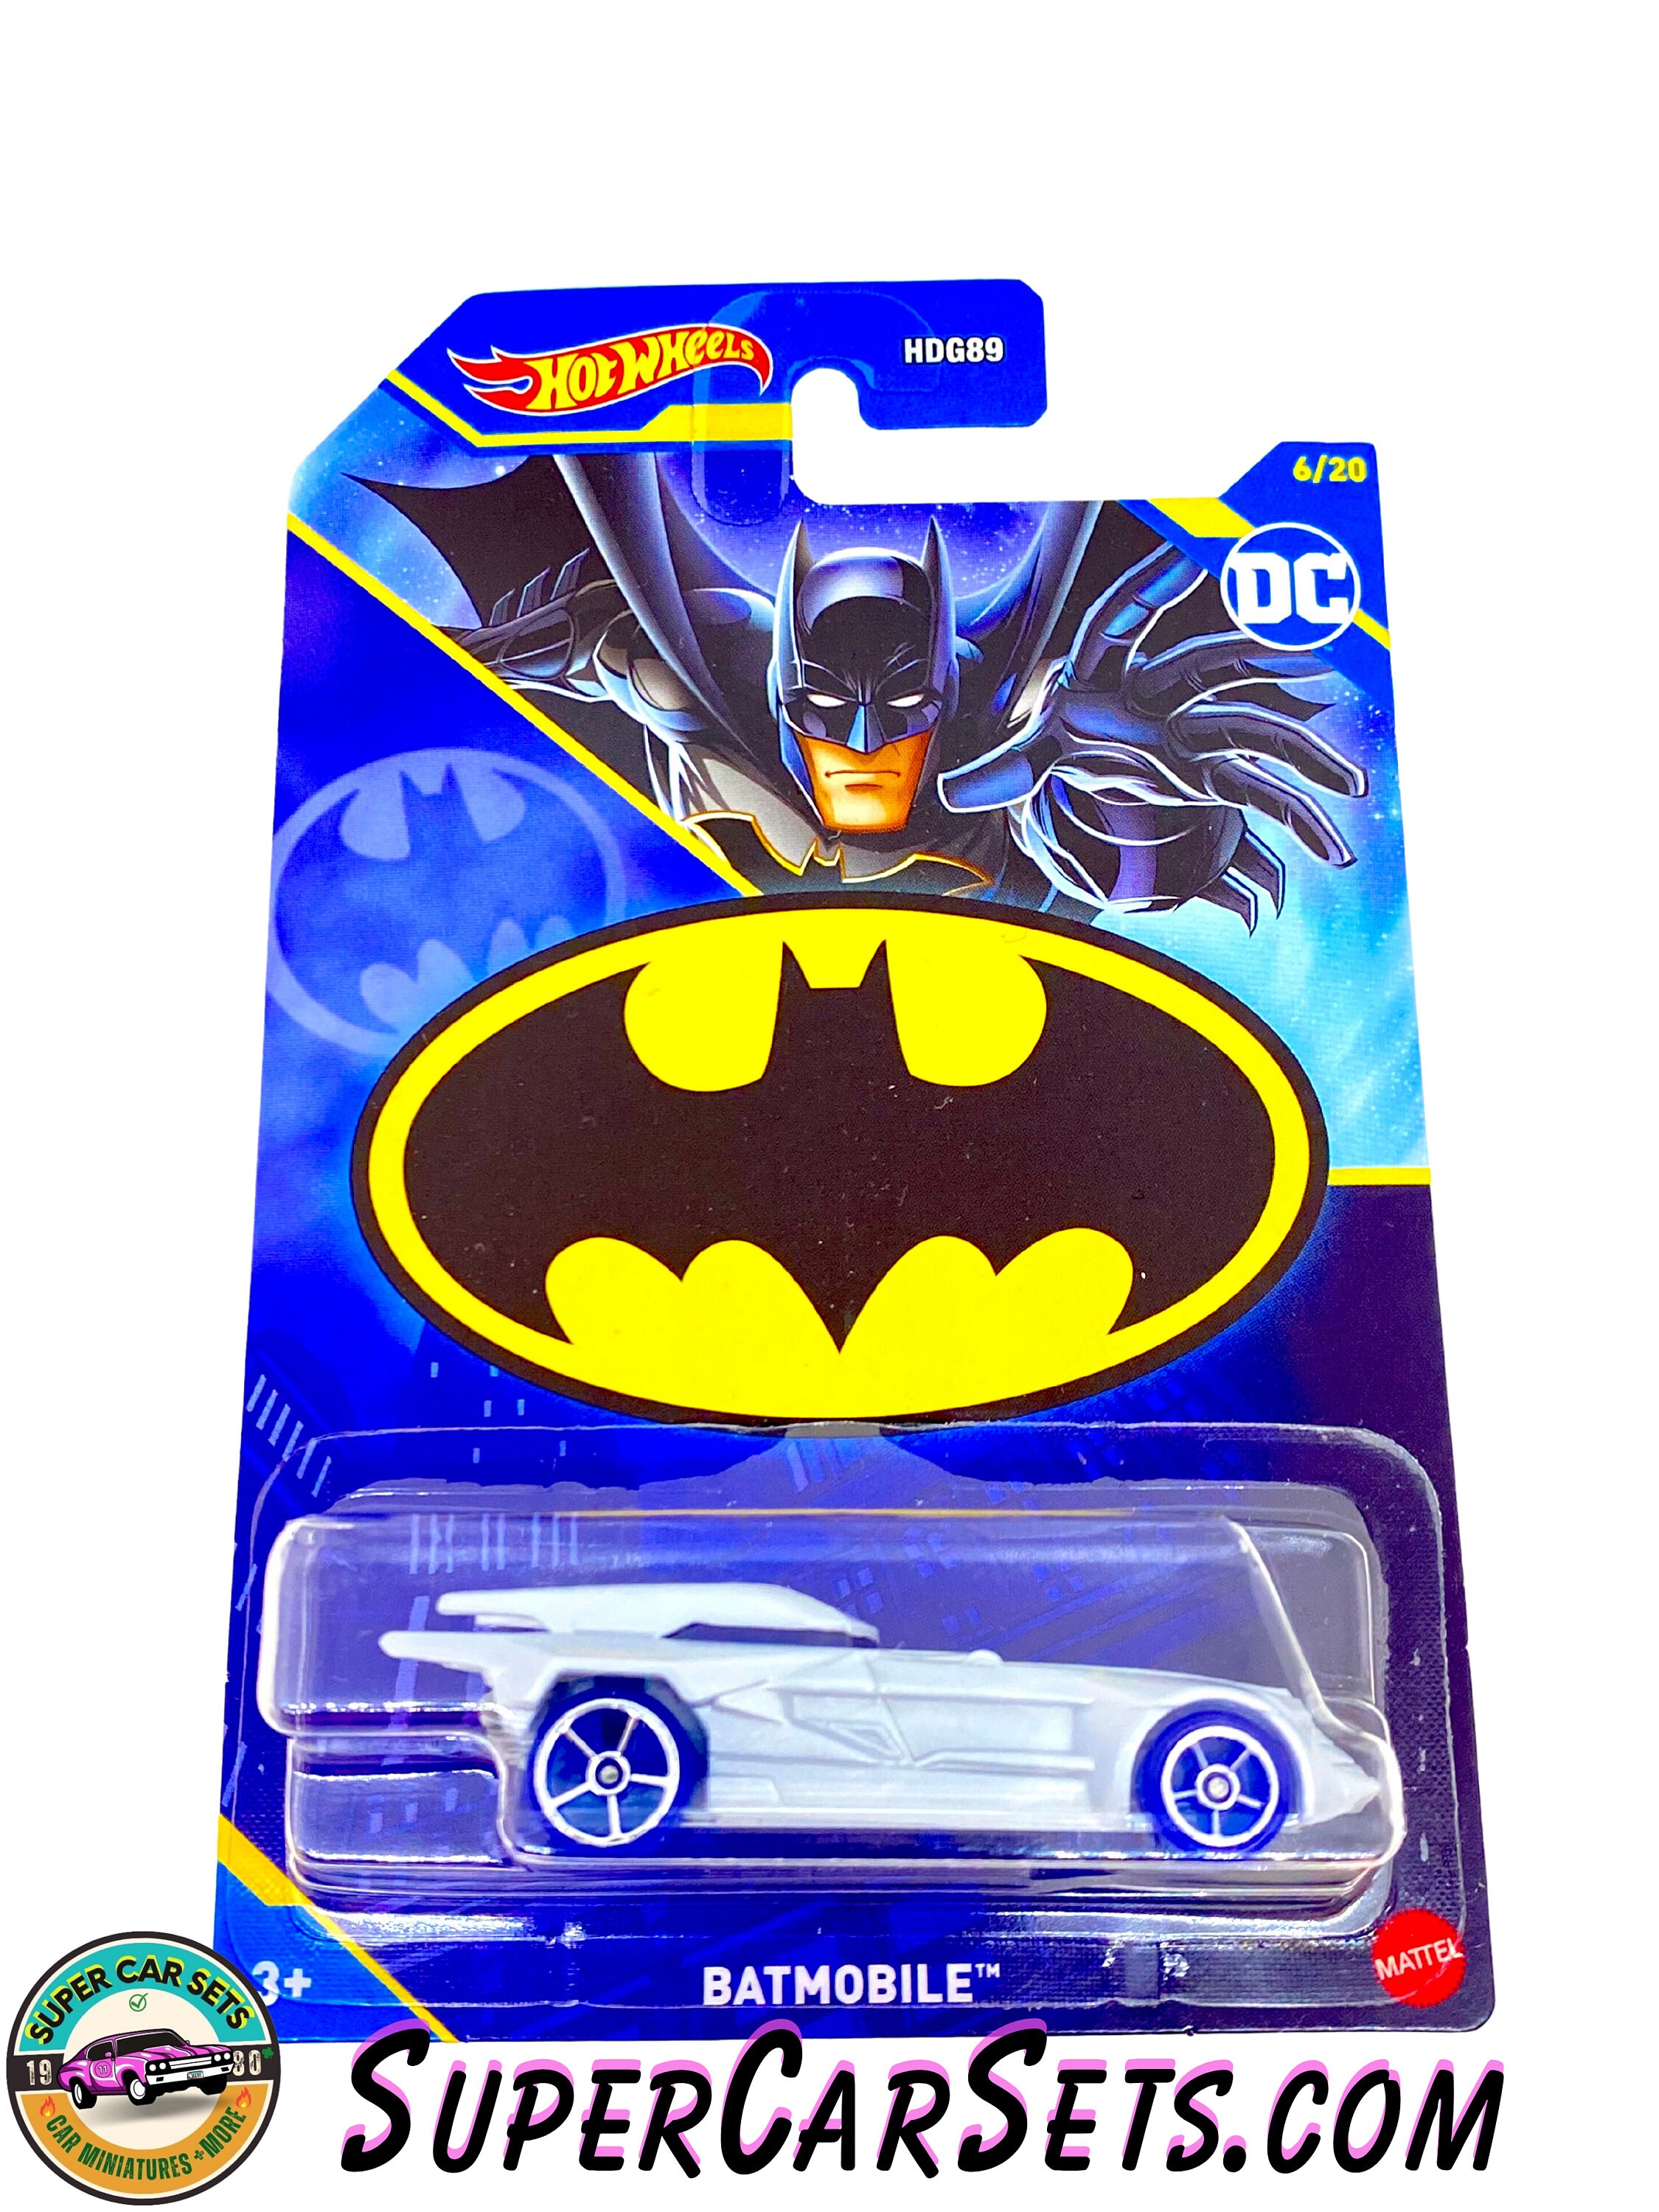 NEW LEGO DC Batman 1989 Batmobile 76139 Playset NIB Sealed Box Set